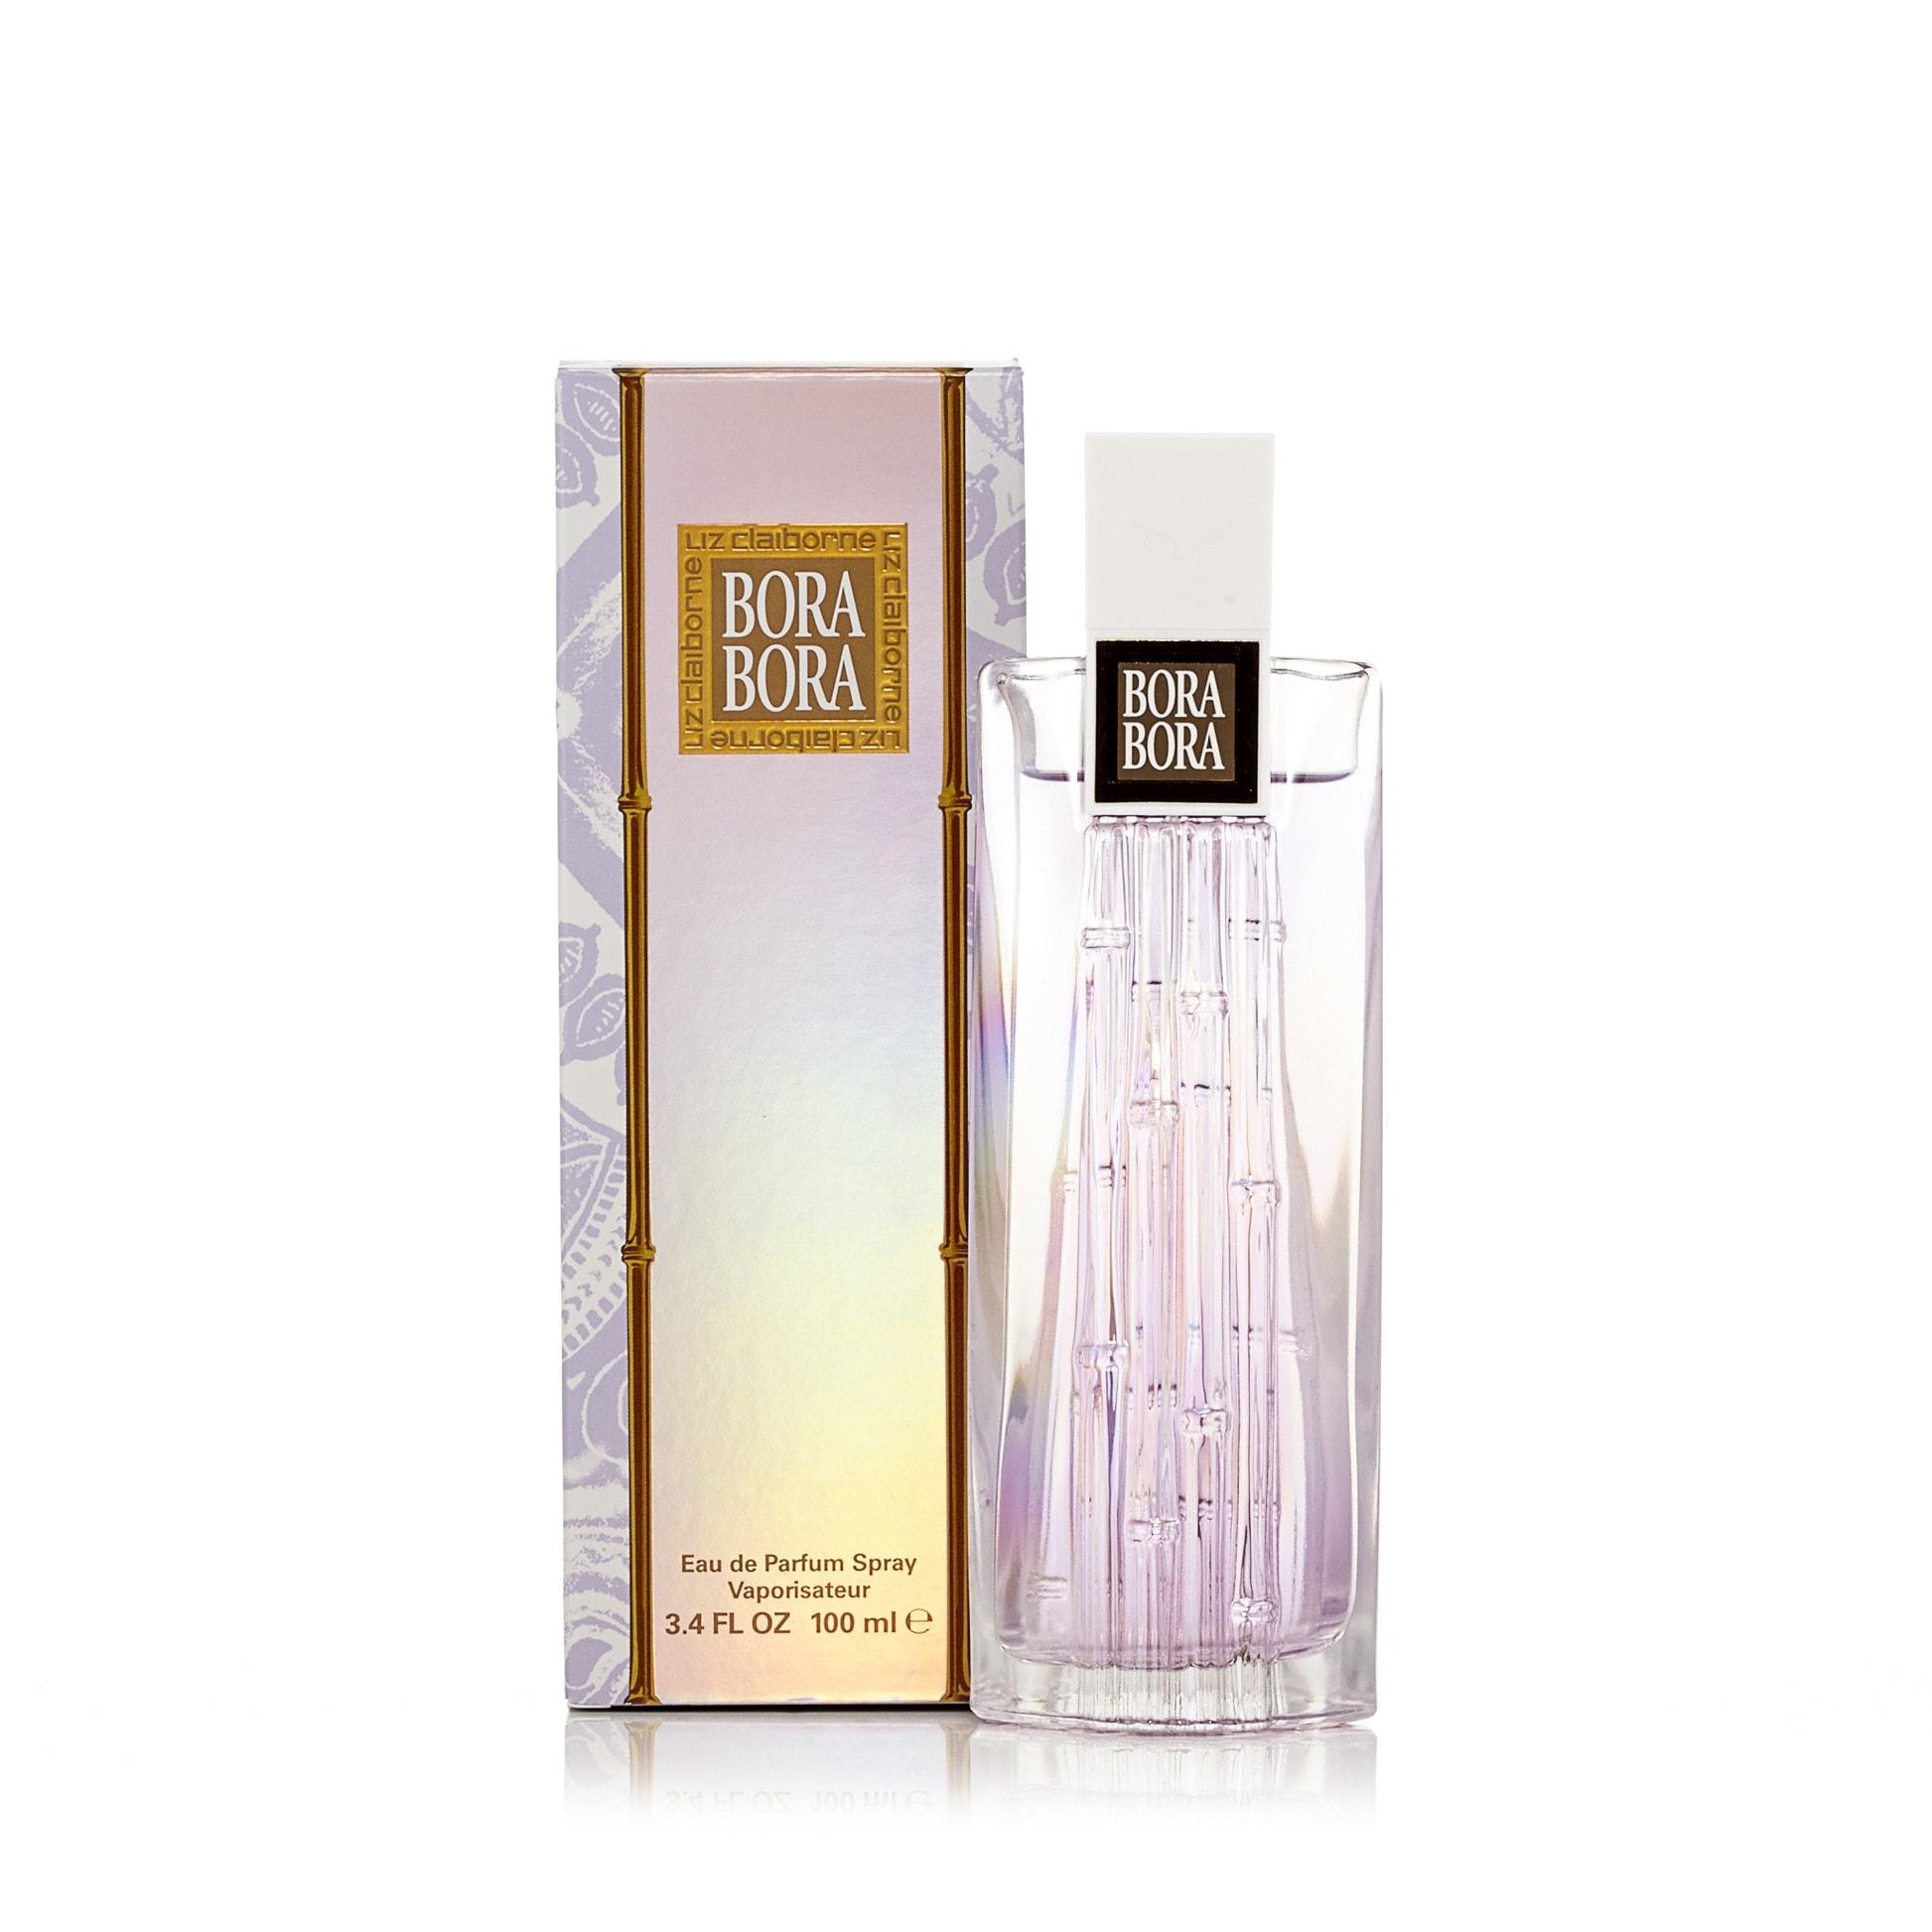 Bora Bora Eau de Parfum Spray for Women by Claiborne, Product image 1